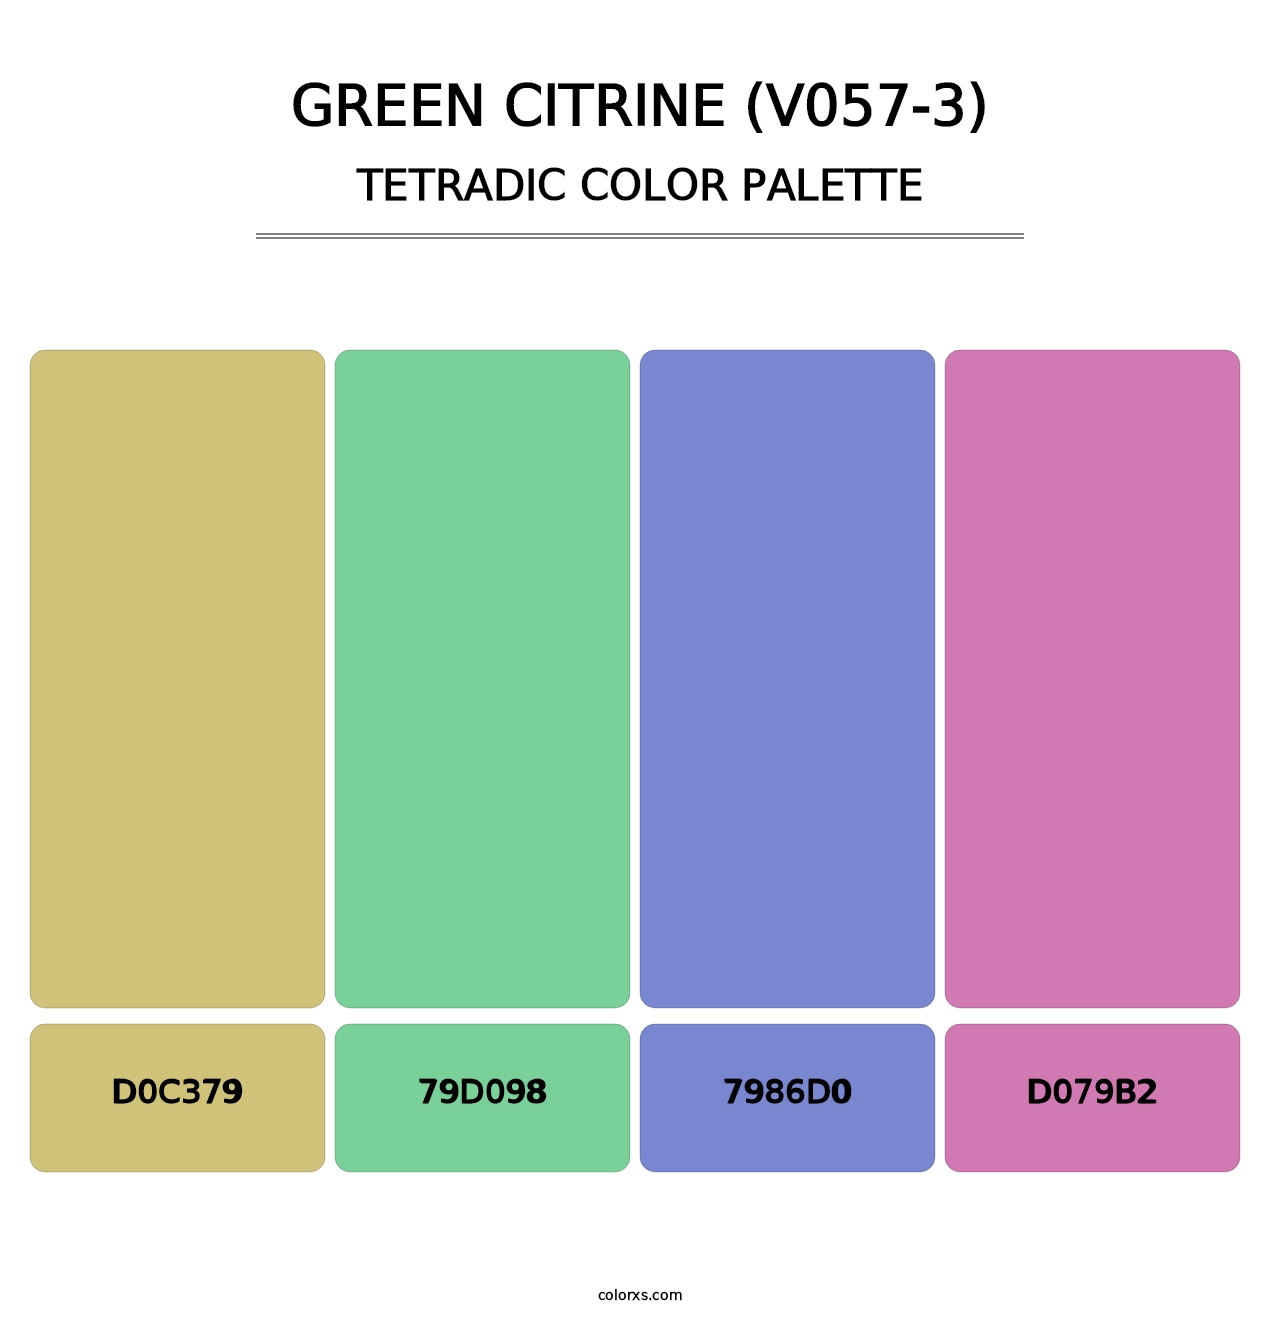 Green Citrine (V057-3) - Tetradic Color Palette